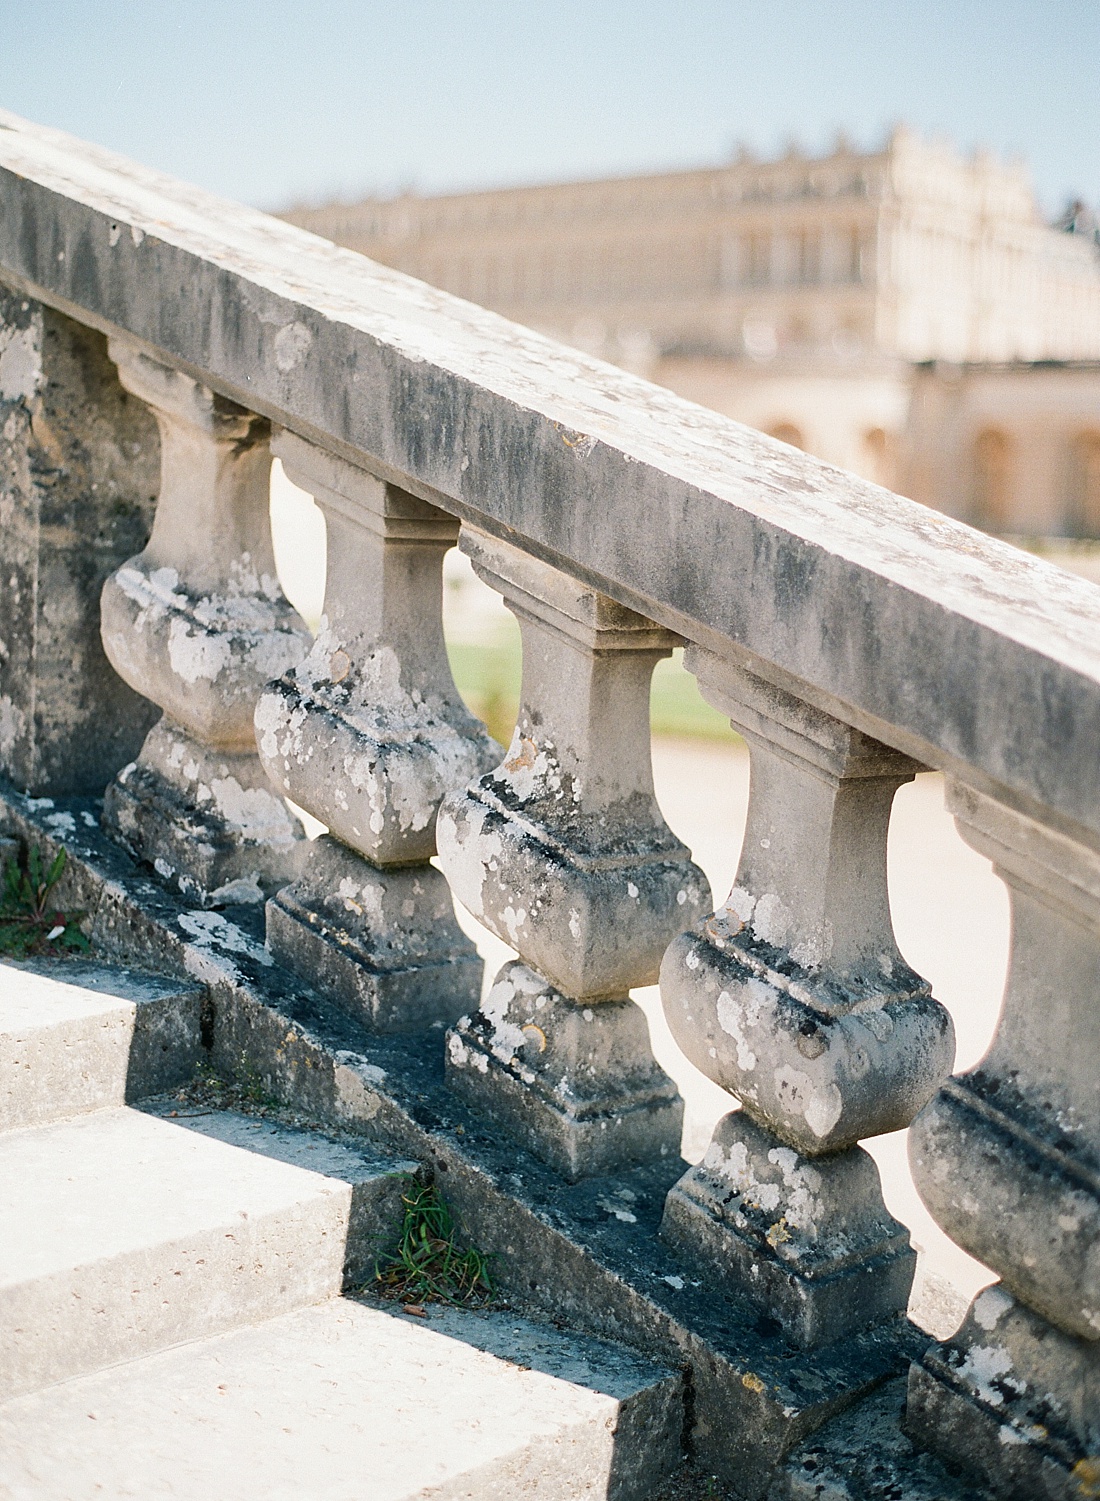 Domaine de Versailles | Orangerie | Photographe de voyager Abby Grace